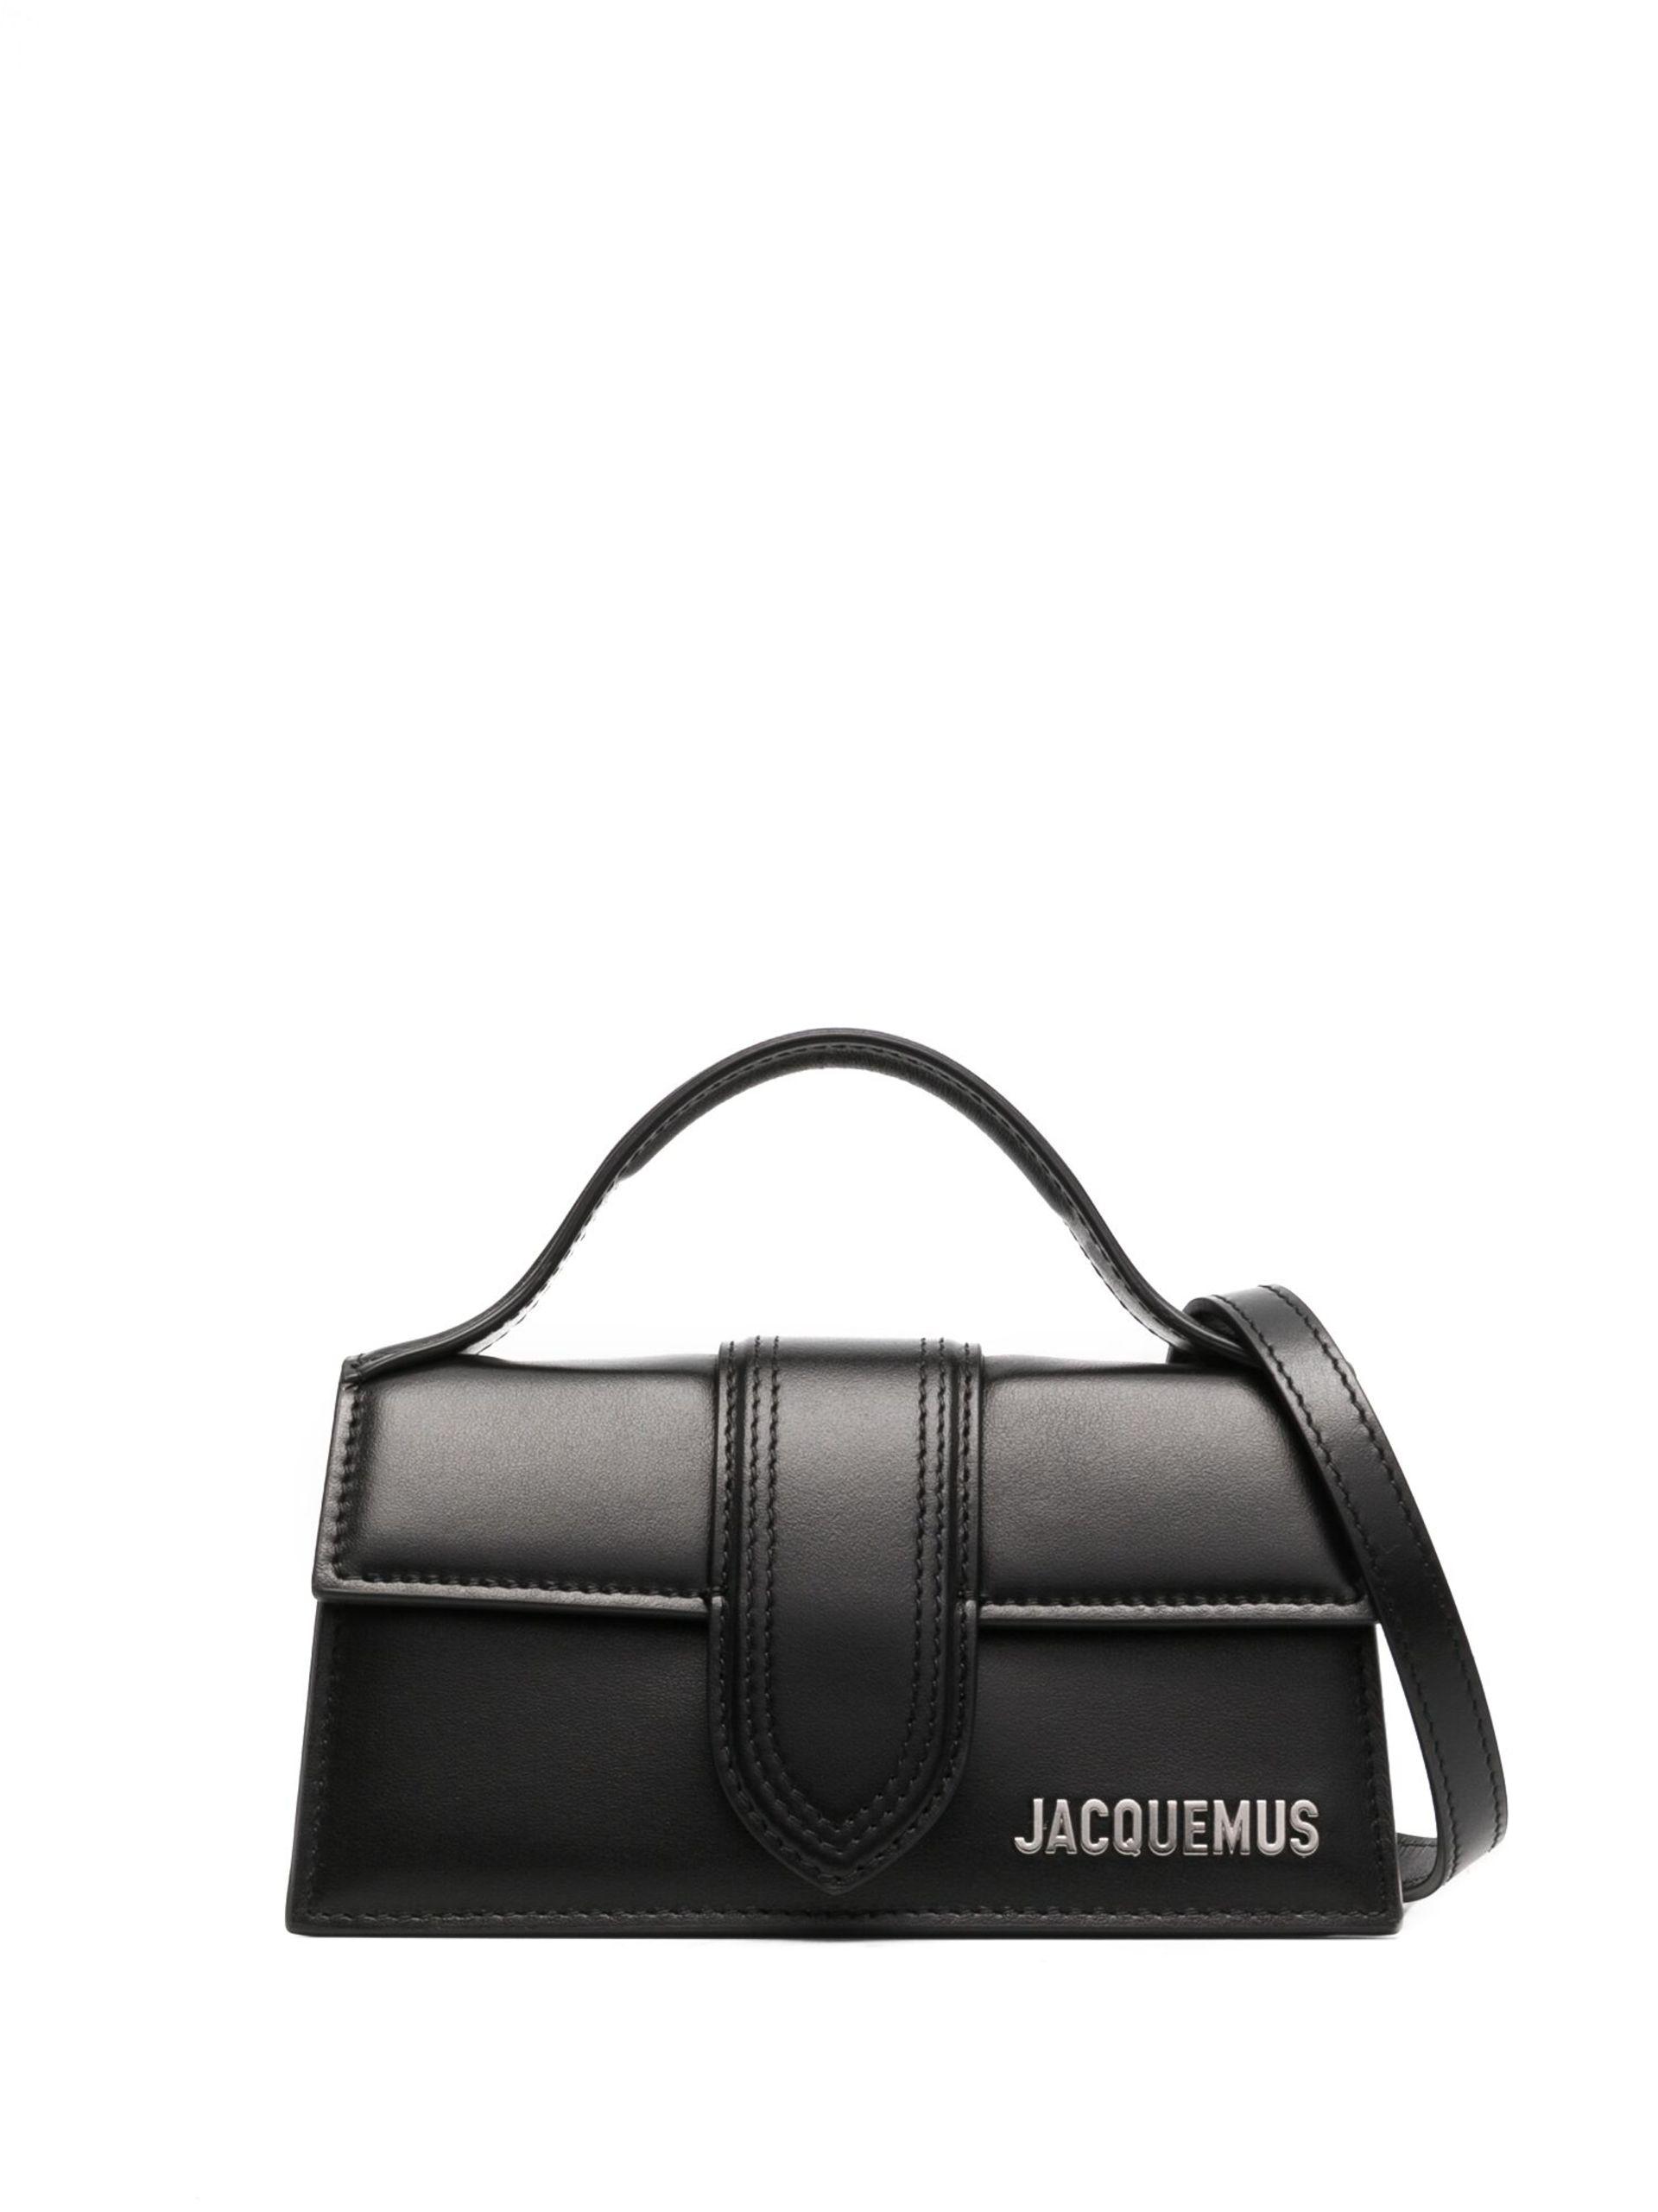 Jacquemus Le Petit Bambino Leather Shoulder Bag